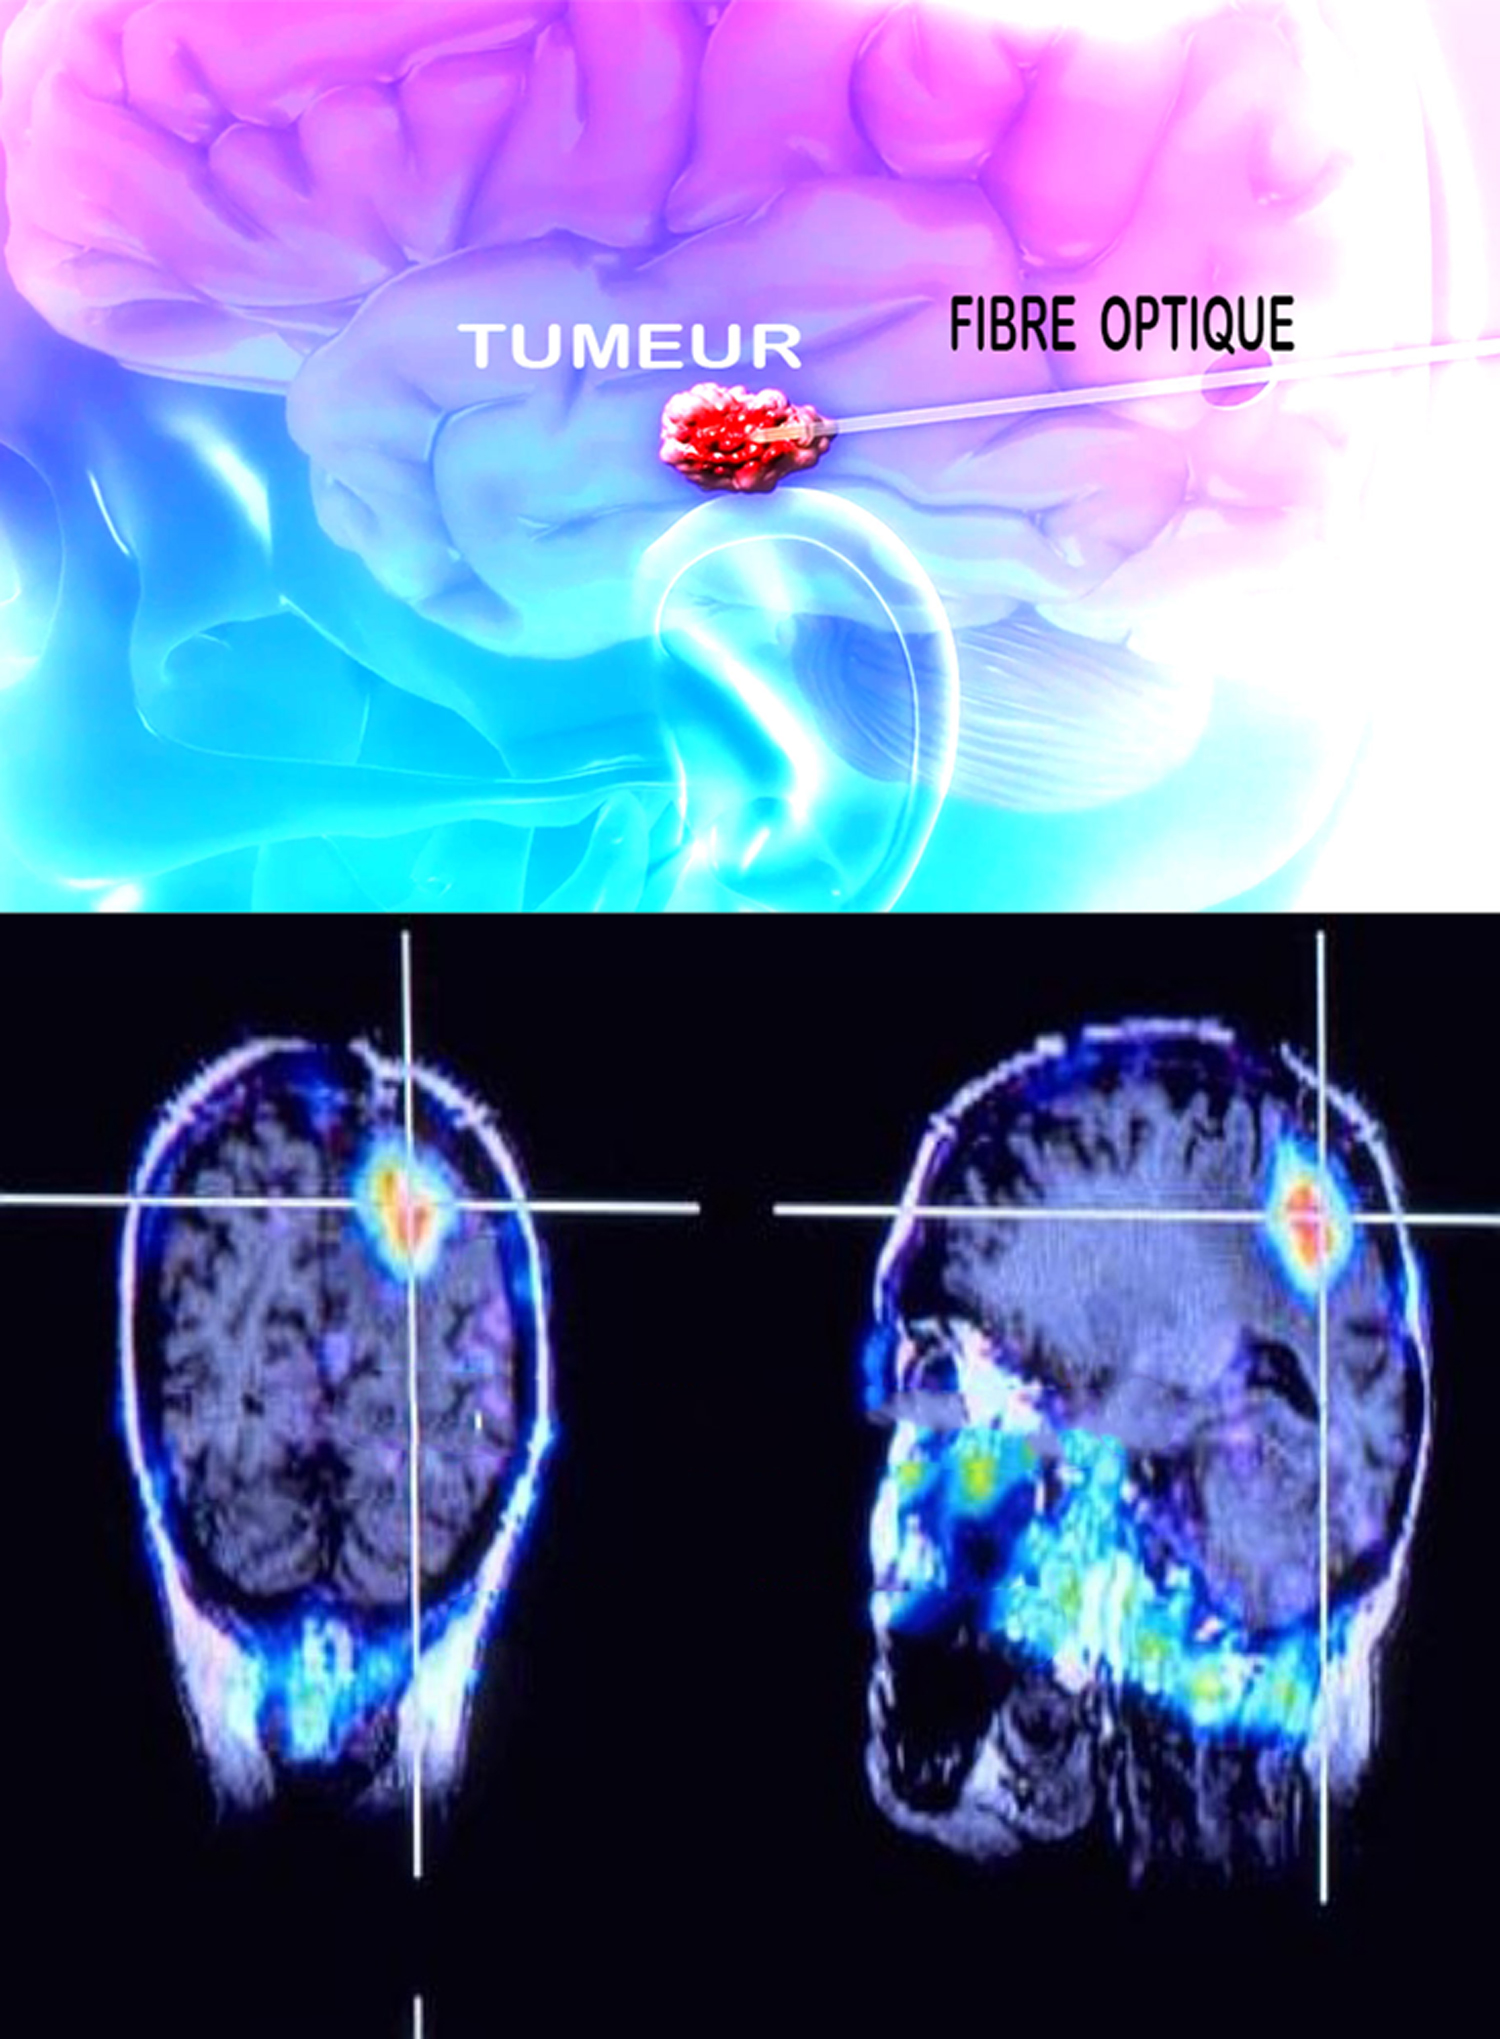 Traitement lasers dans les tumeurs cerebrales - International ...